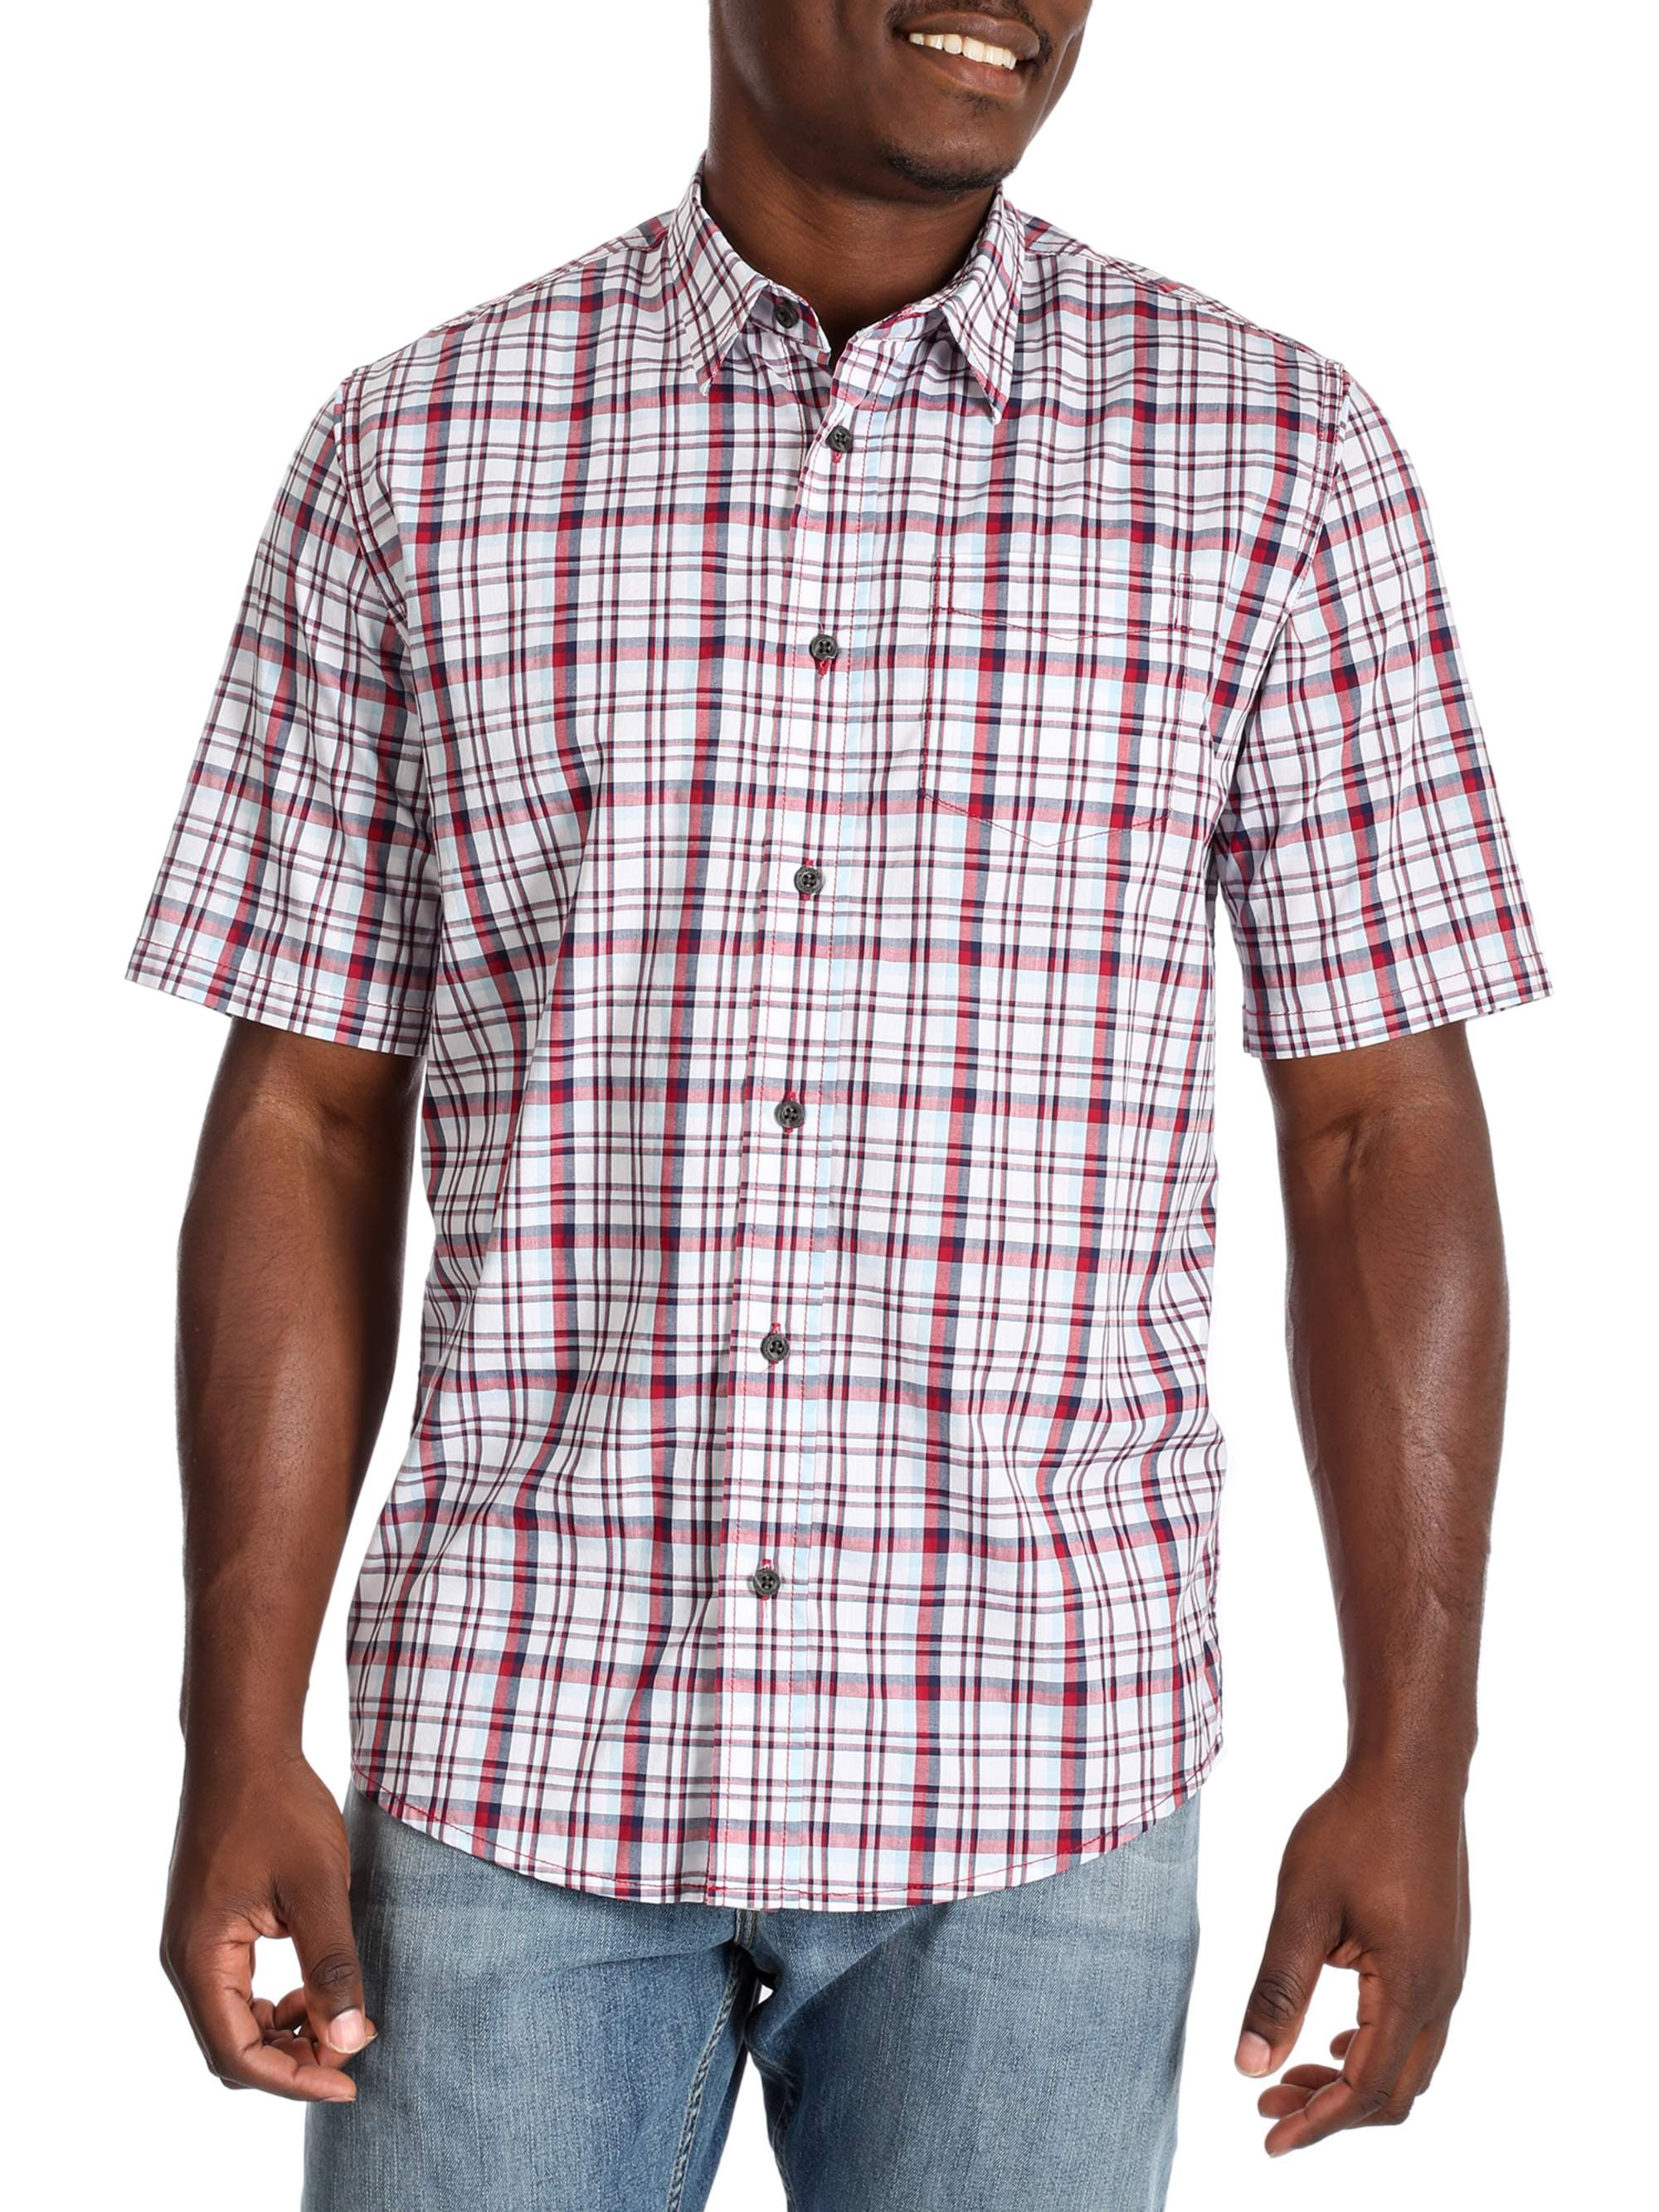 Men's Advanced Comfort Short Sleeve Woven Shirt - Walmart.com